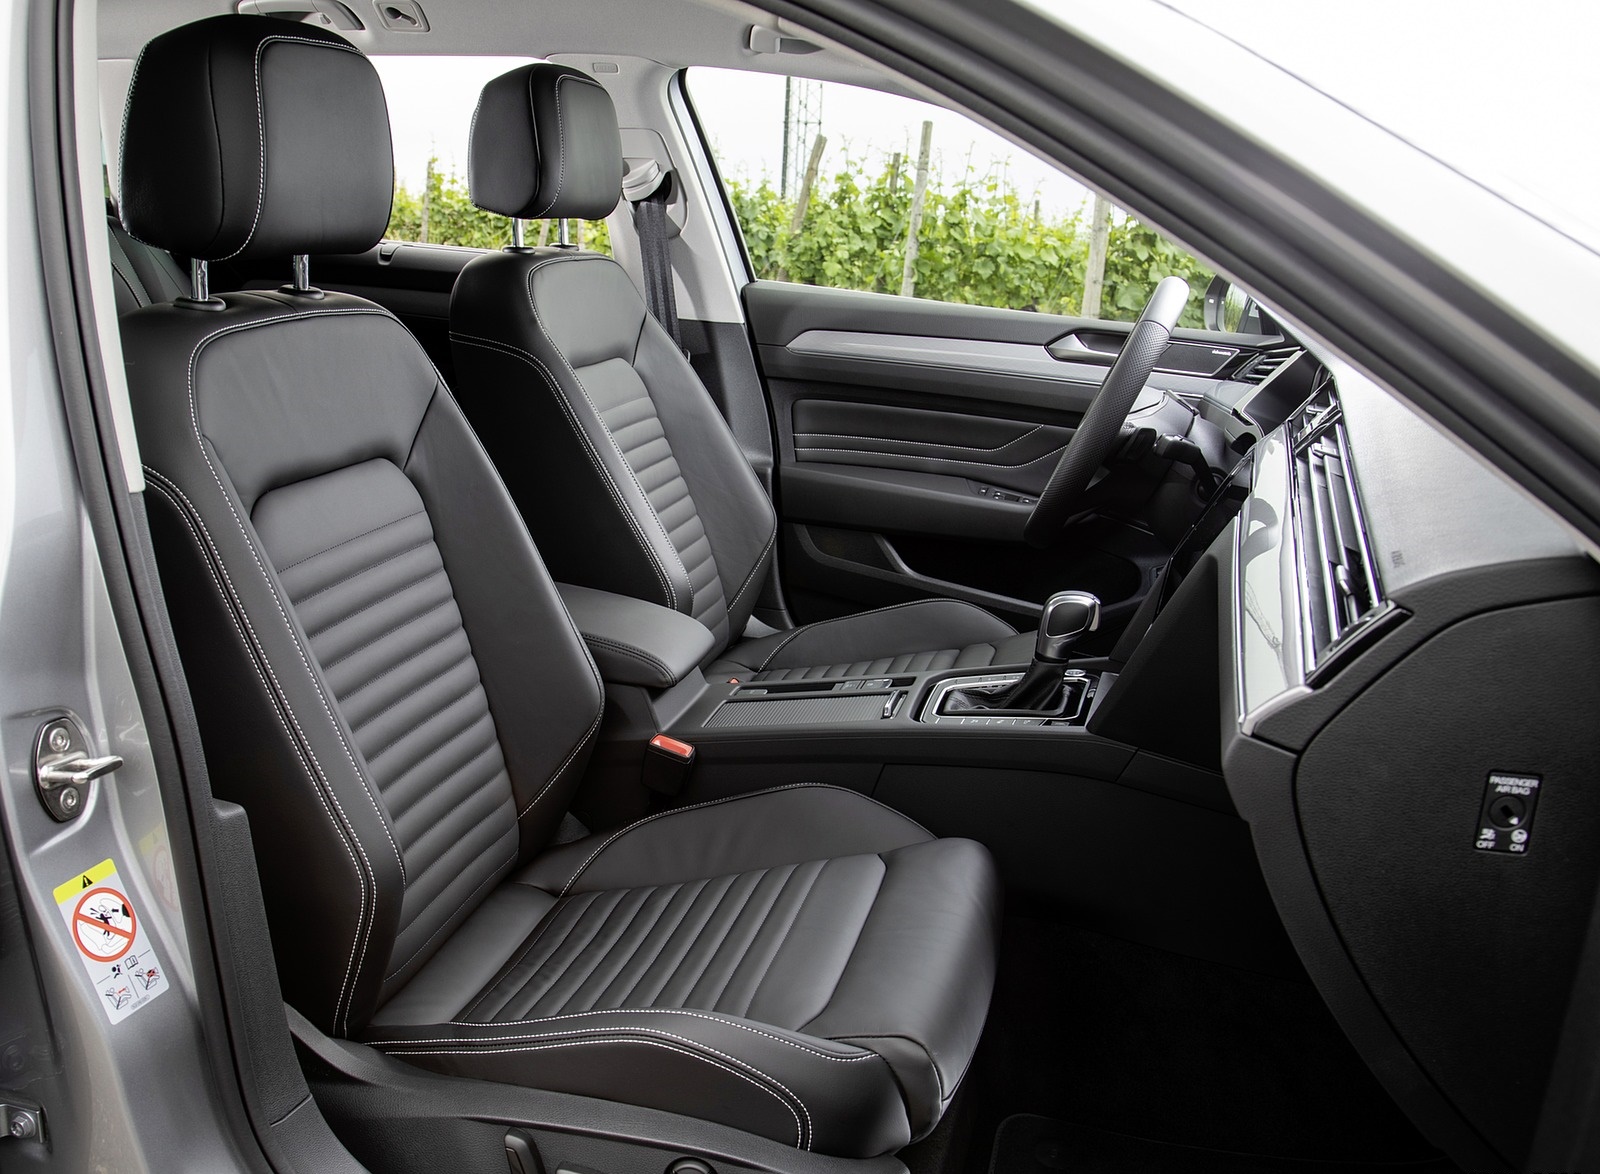 2020 Volkswagen Passat GTE Variant (Plug-In Hybrid EU-Spec) Interior Front Seats Wallpapers #28 of 52